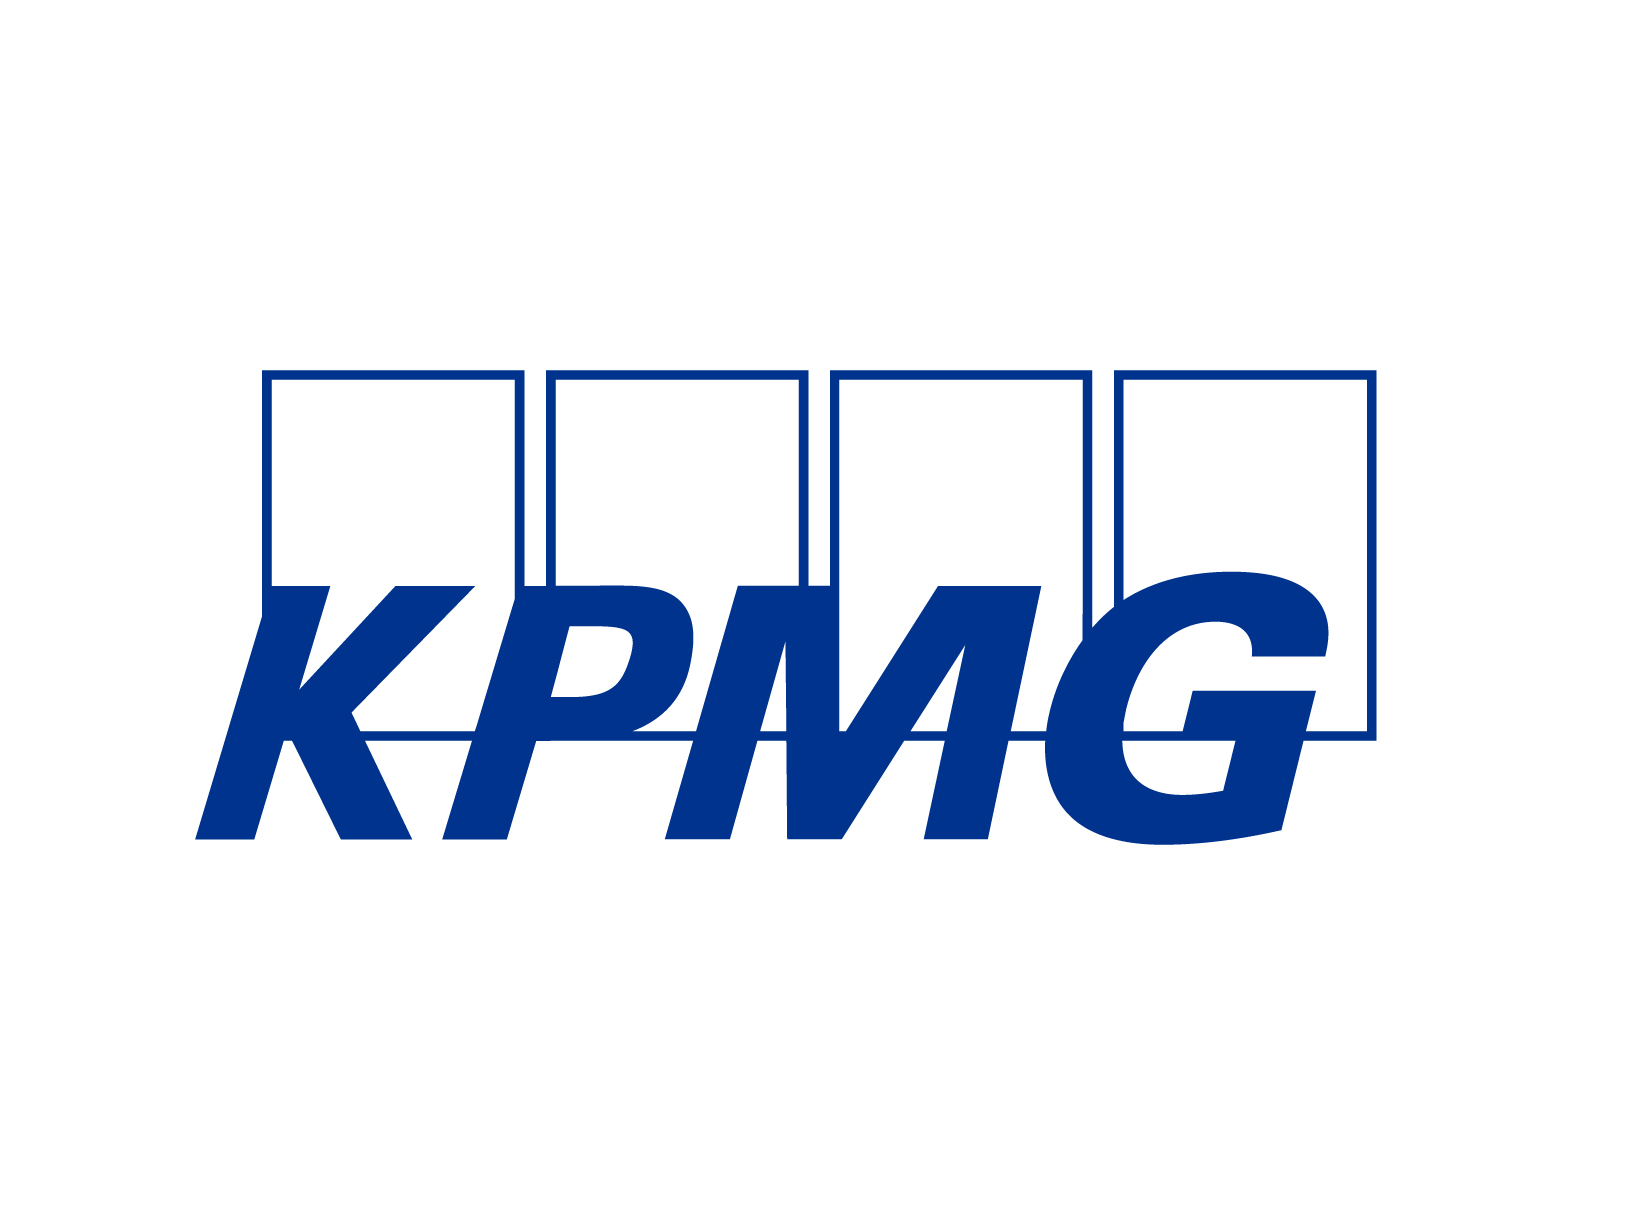 Imagen de la empresa KPMG Asesores a la que se le ofrecen los descuentos